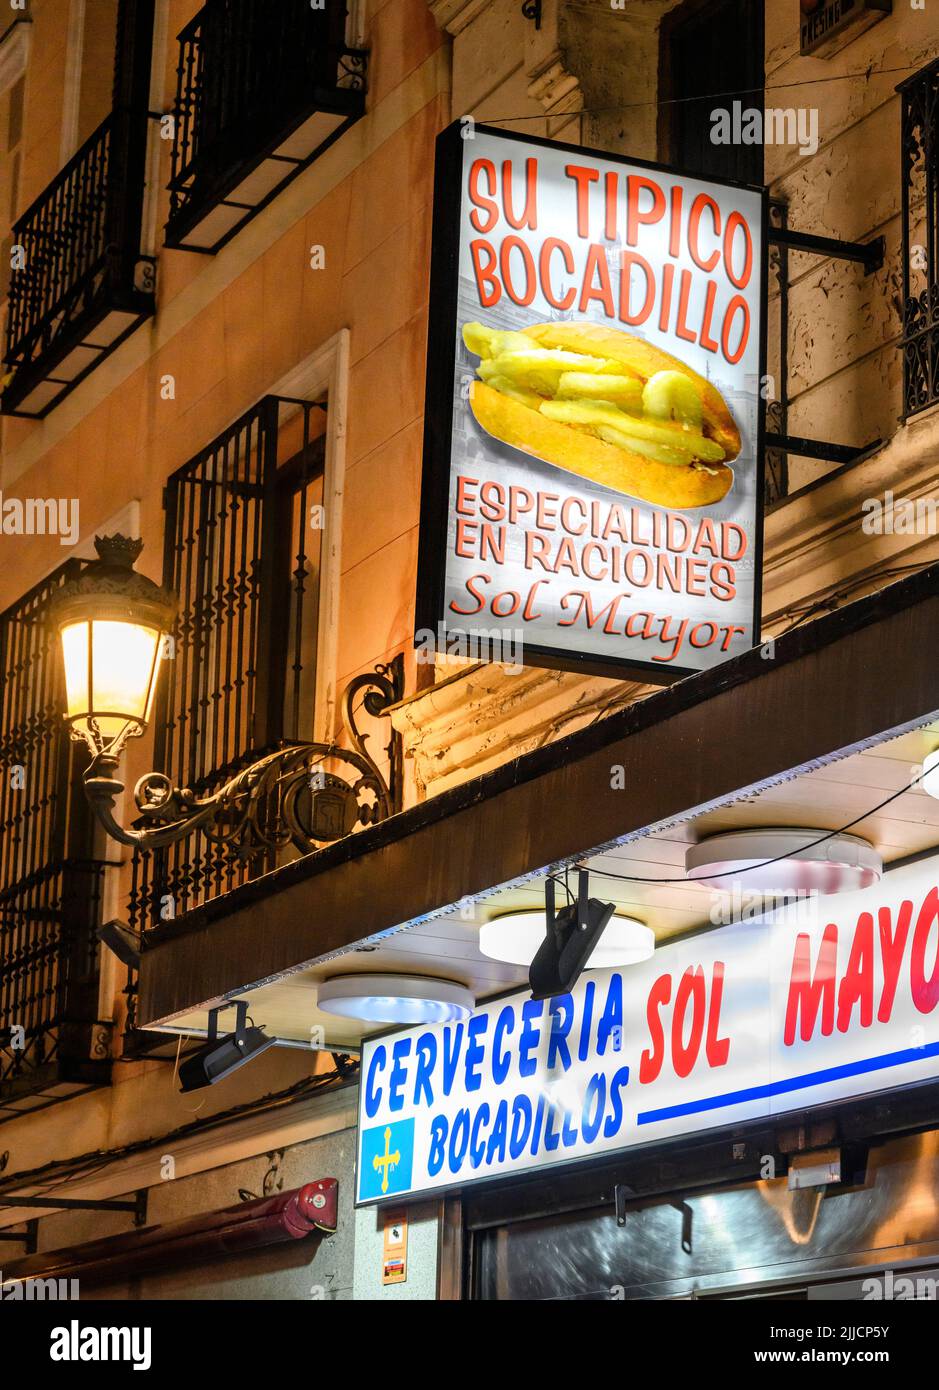 cervecería Sol Mayor, especializada en calamares bocadillos, calamar frito en rollitos, cerca de la Puerta del Sol, en el centro de Madrid. España Foto de stock